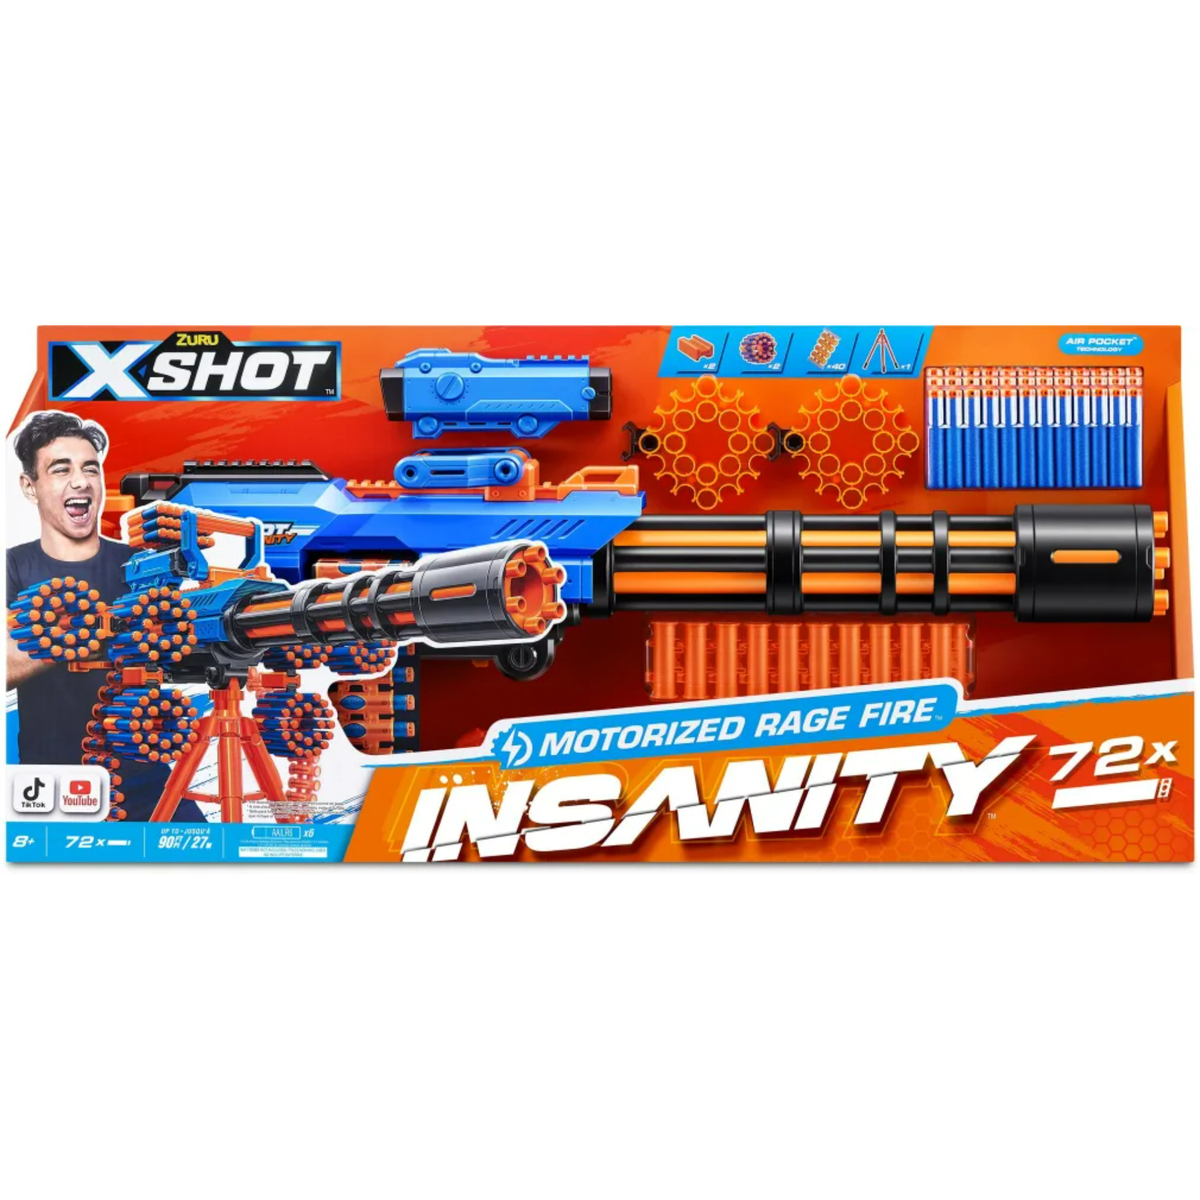 X-Shot Insanity, Motorized Rage Fire with 72 Darts, XS-36605